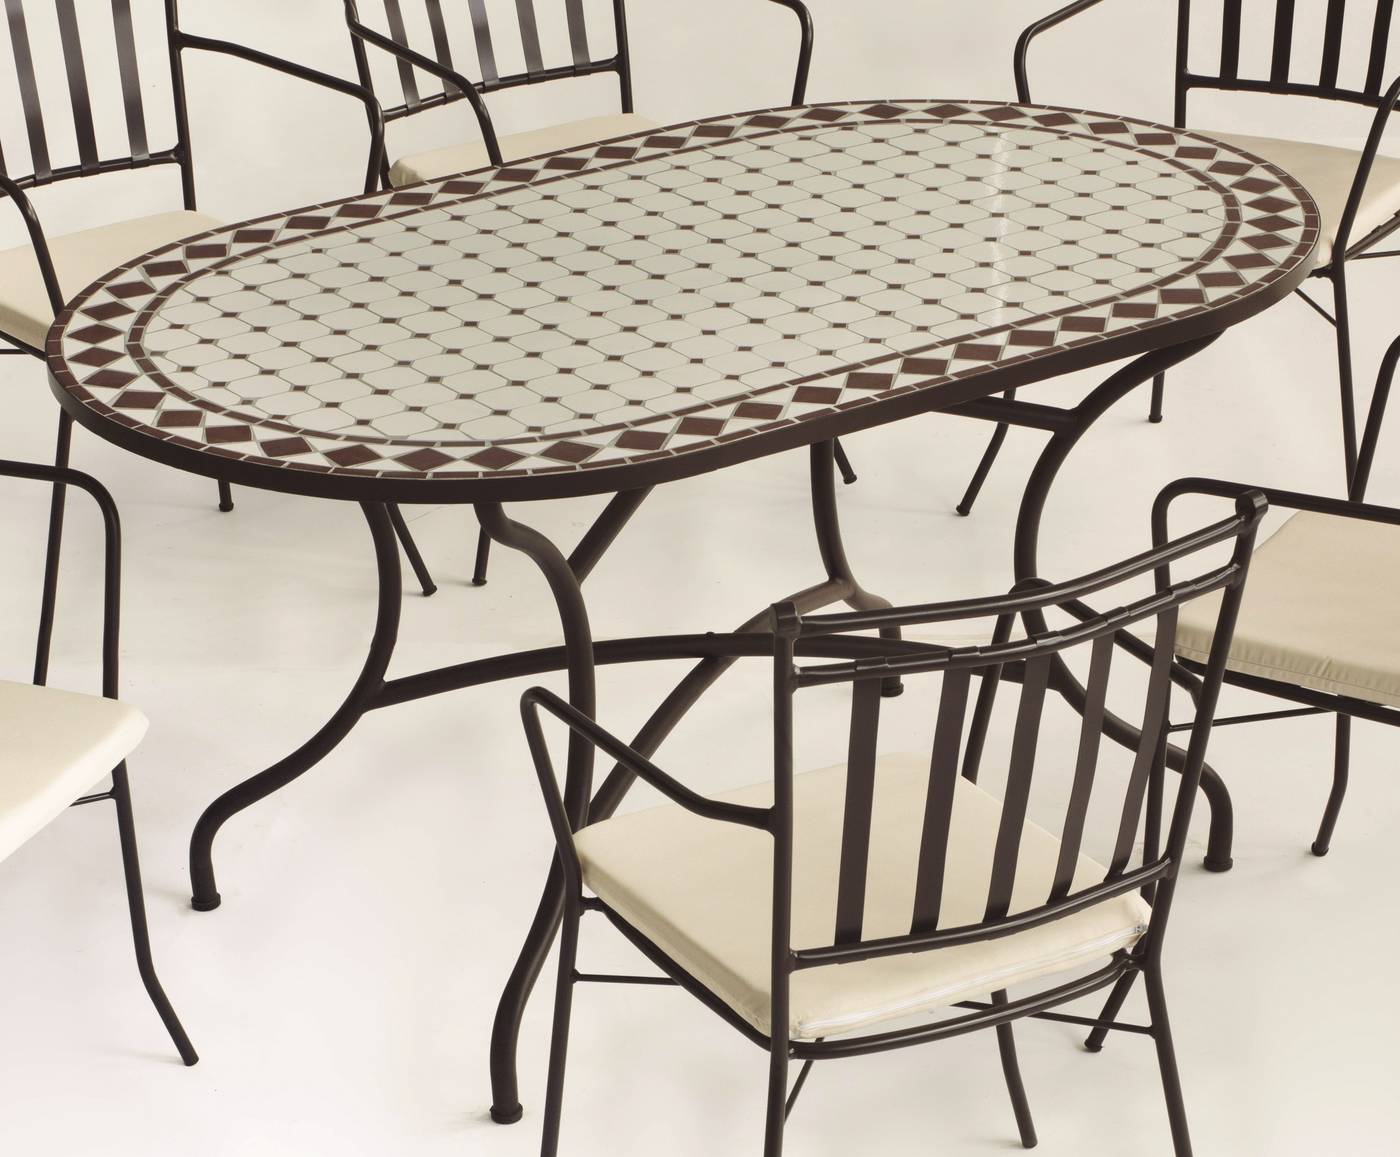 Conjunto Mosaico Sambala150-Bergamo - Conjunto de forja color marrón: mesa con tablero mosaico ovalado de 150 cm + 4 sillones de ratán con cojines.